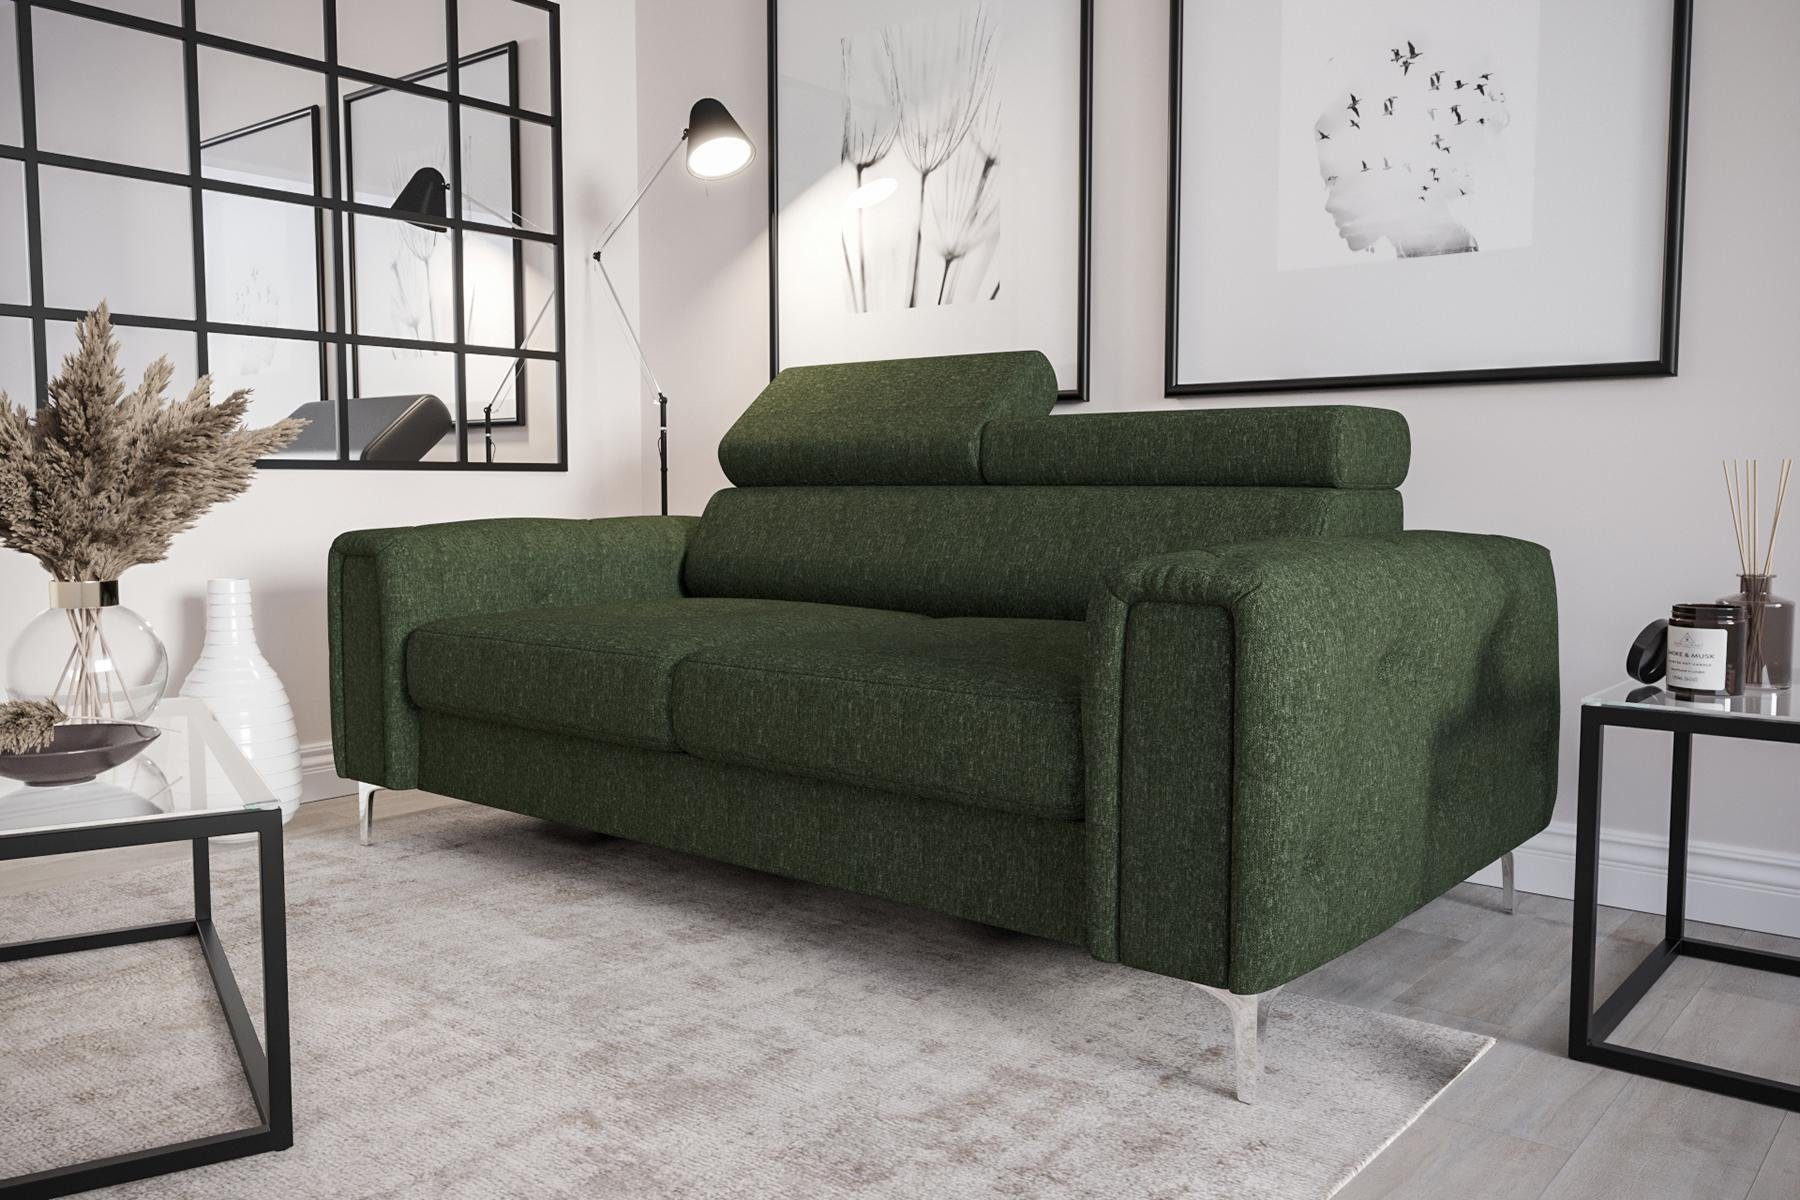 JVmoebel Sofa Designer 2-Sitzer Sofa Couchen Luxus Polster Möbel Sofa Couch Sitz, Made in Europe Grün | Grün | Grün | Alle Sofas